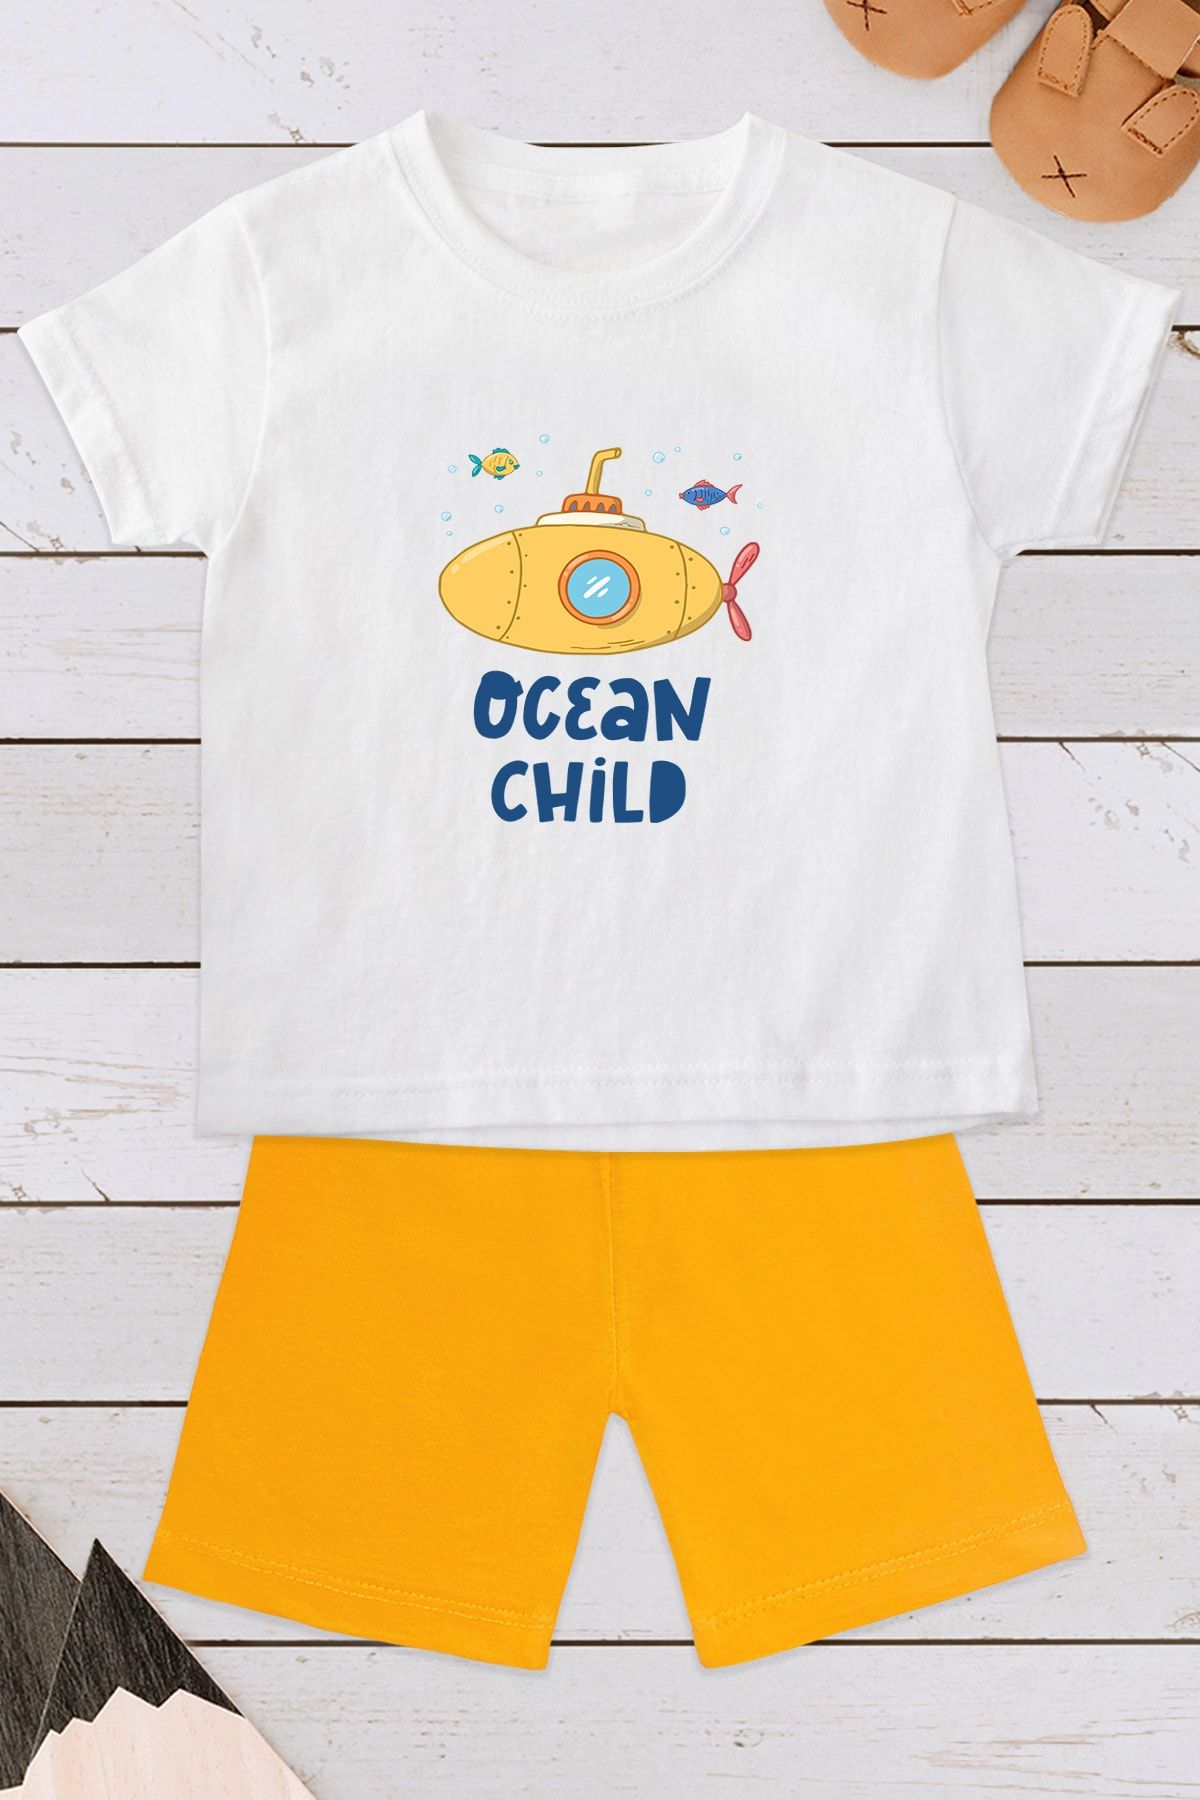 Kio Tasarım Ocean Child Desenli Yenidoğan Bebek Şort Tişört Şortlu Takım Anneye Bebeğe Hediye Doğum Hediyesi